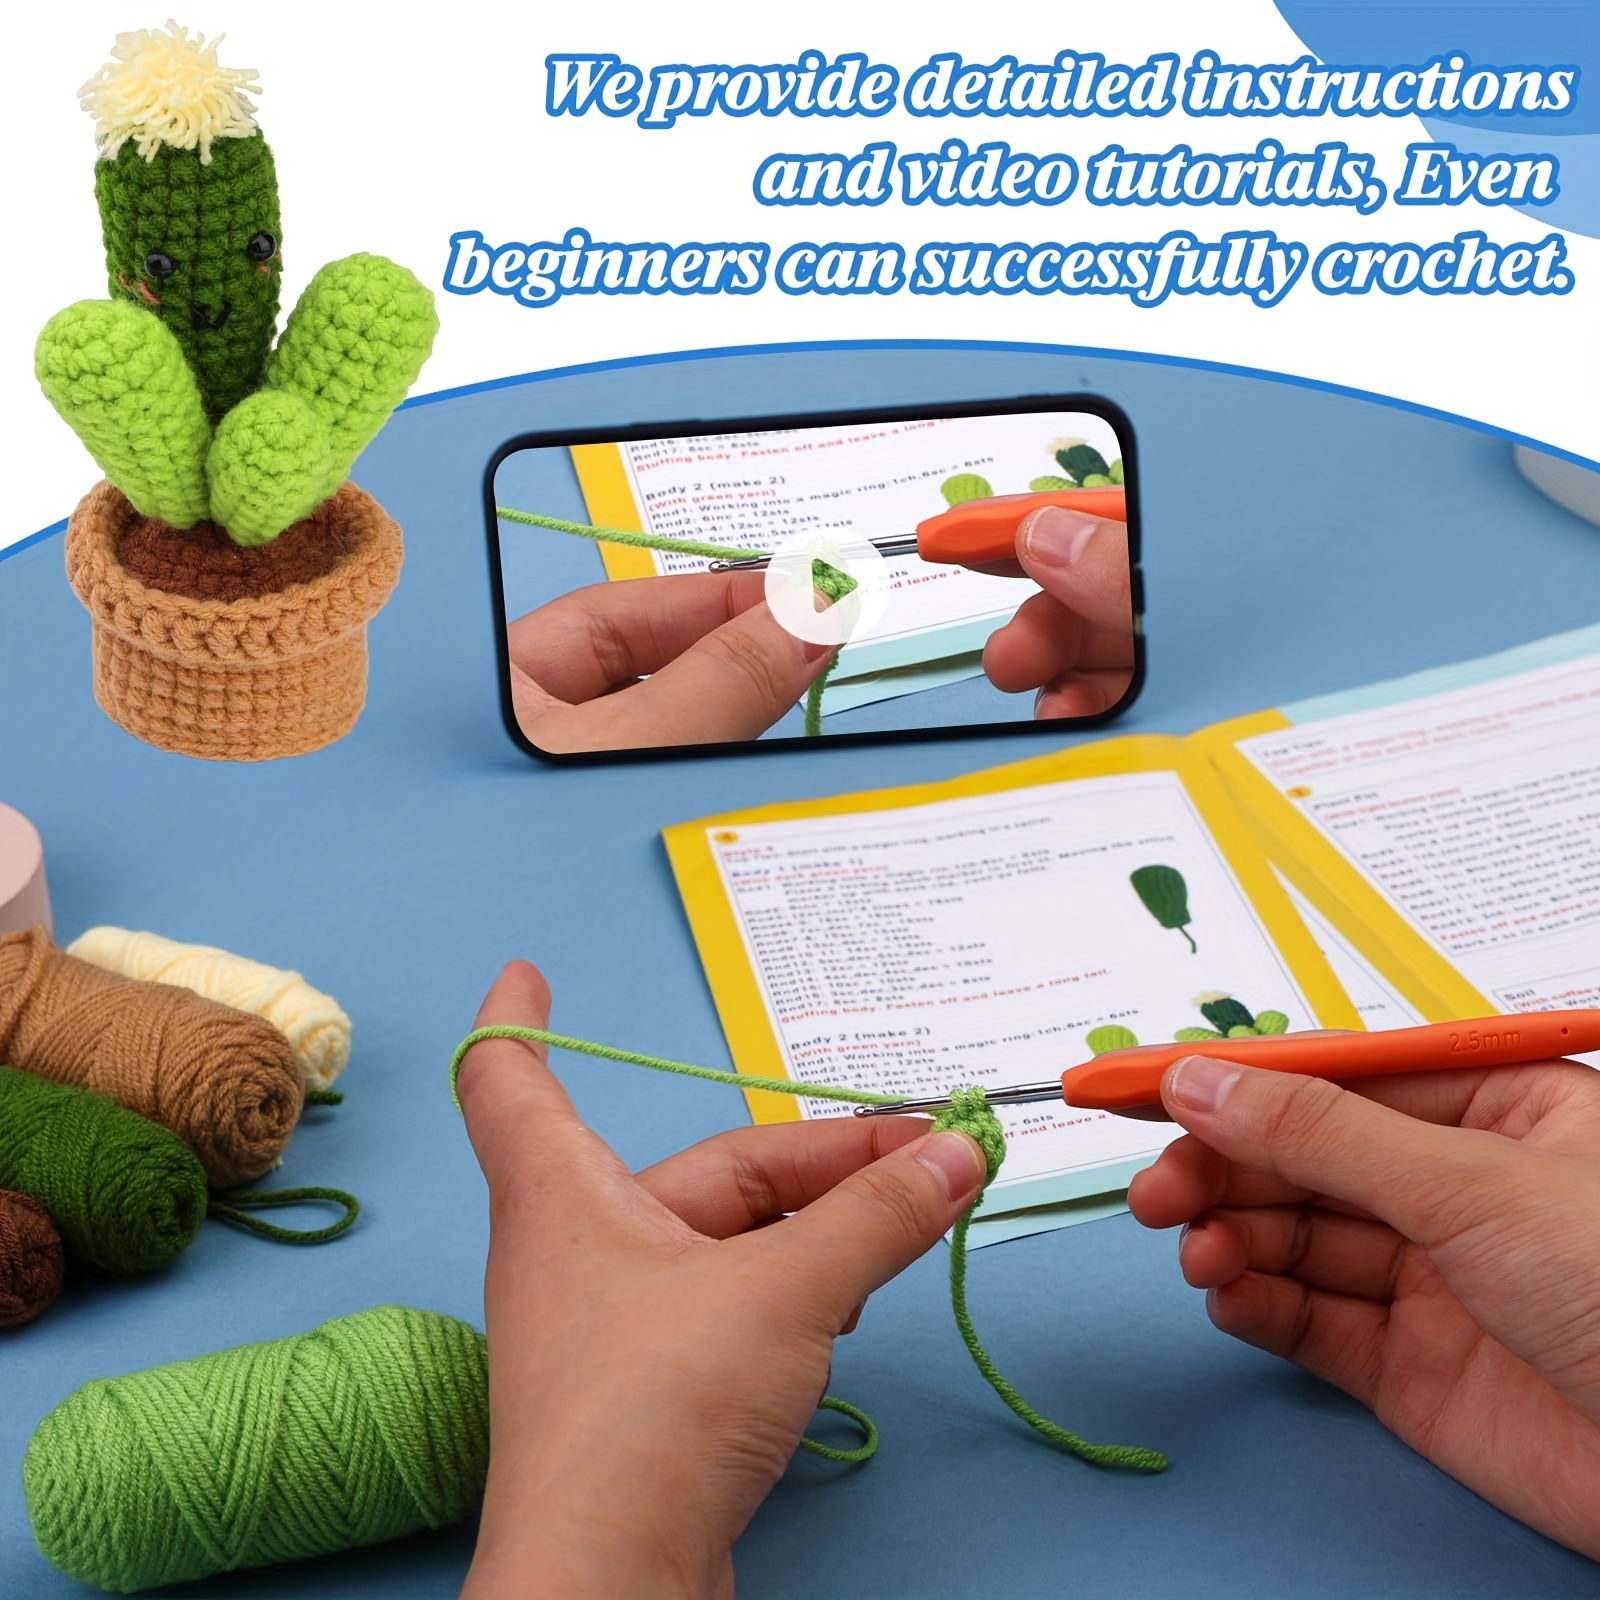 Crochet Kit for Beginners, Crochet Animal Kit, Crochet Starter Kit with  Yarn, Polyester Fiber, Crochet Hooks, Step-by-Step Instructions Video